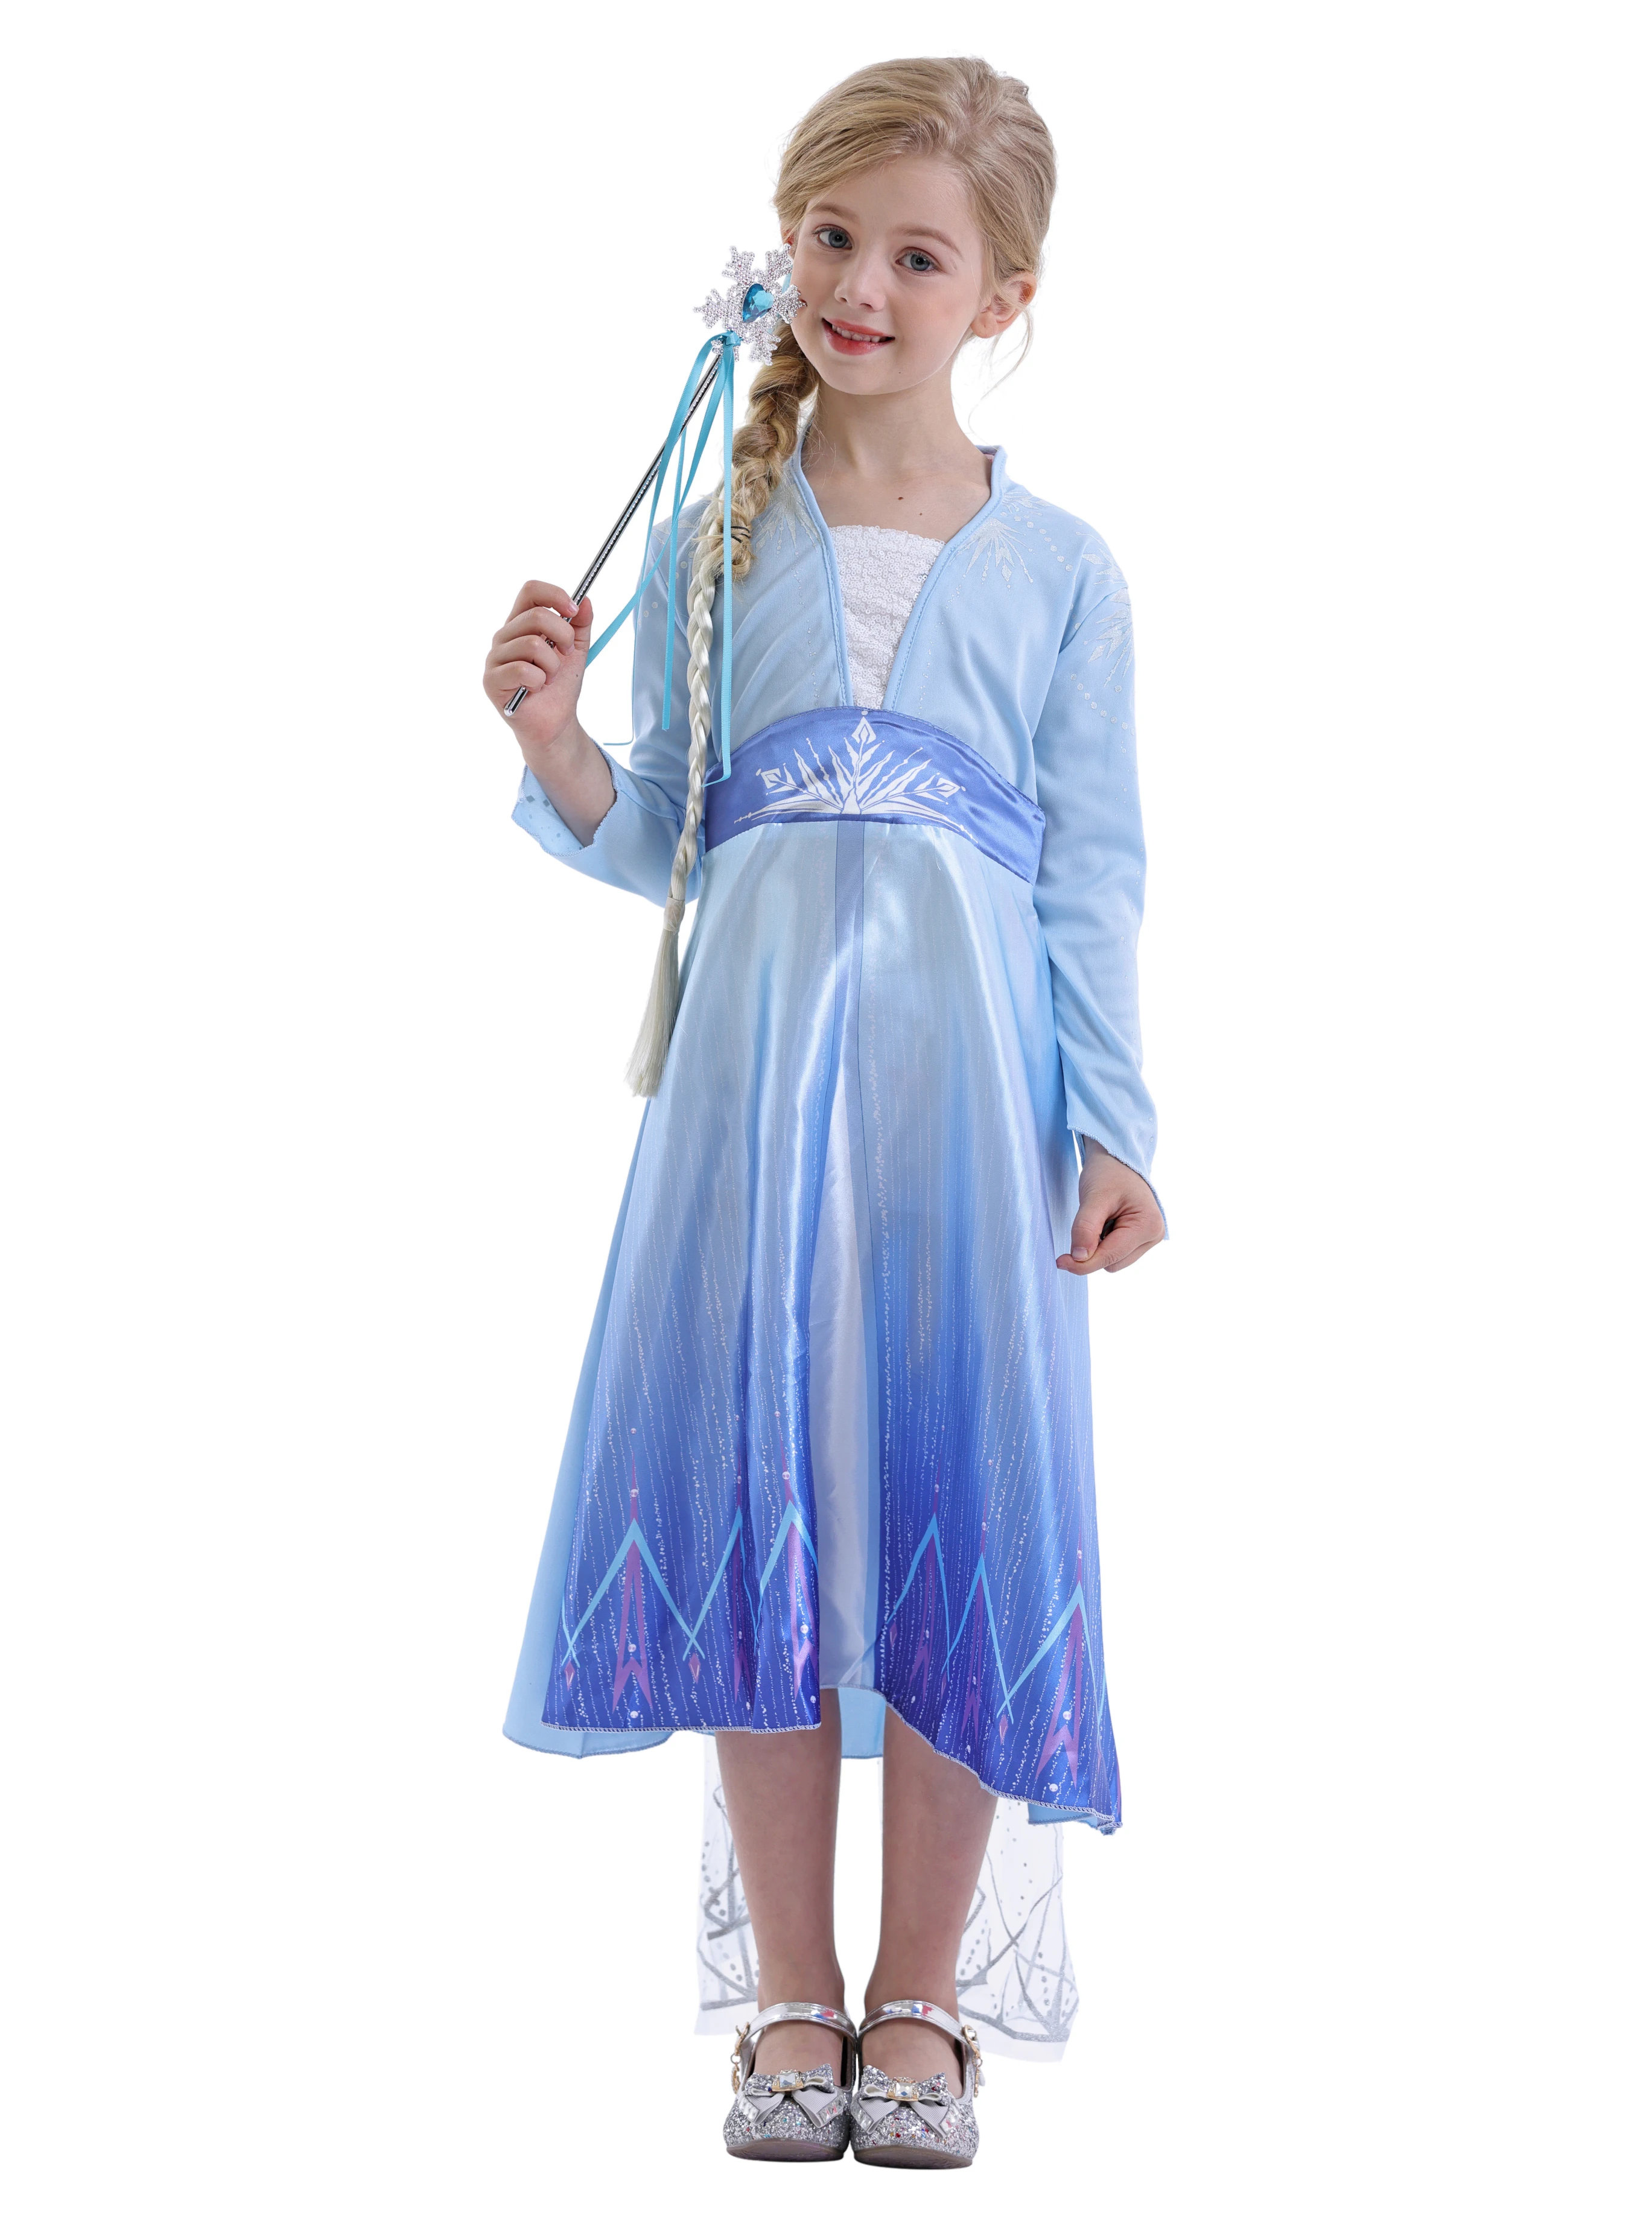 Les Filles Reine 2 Elsa princesse robes cosplay costume carnaval fête 